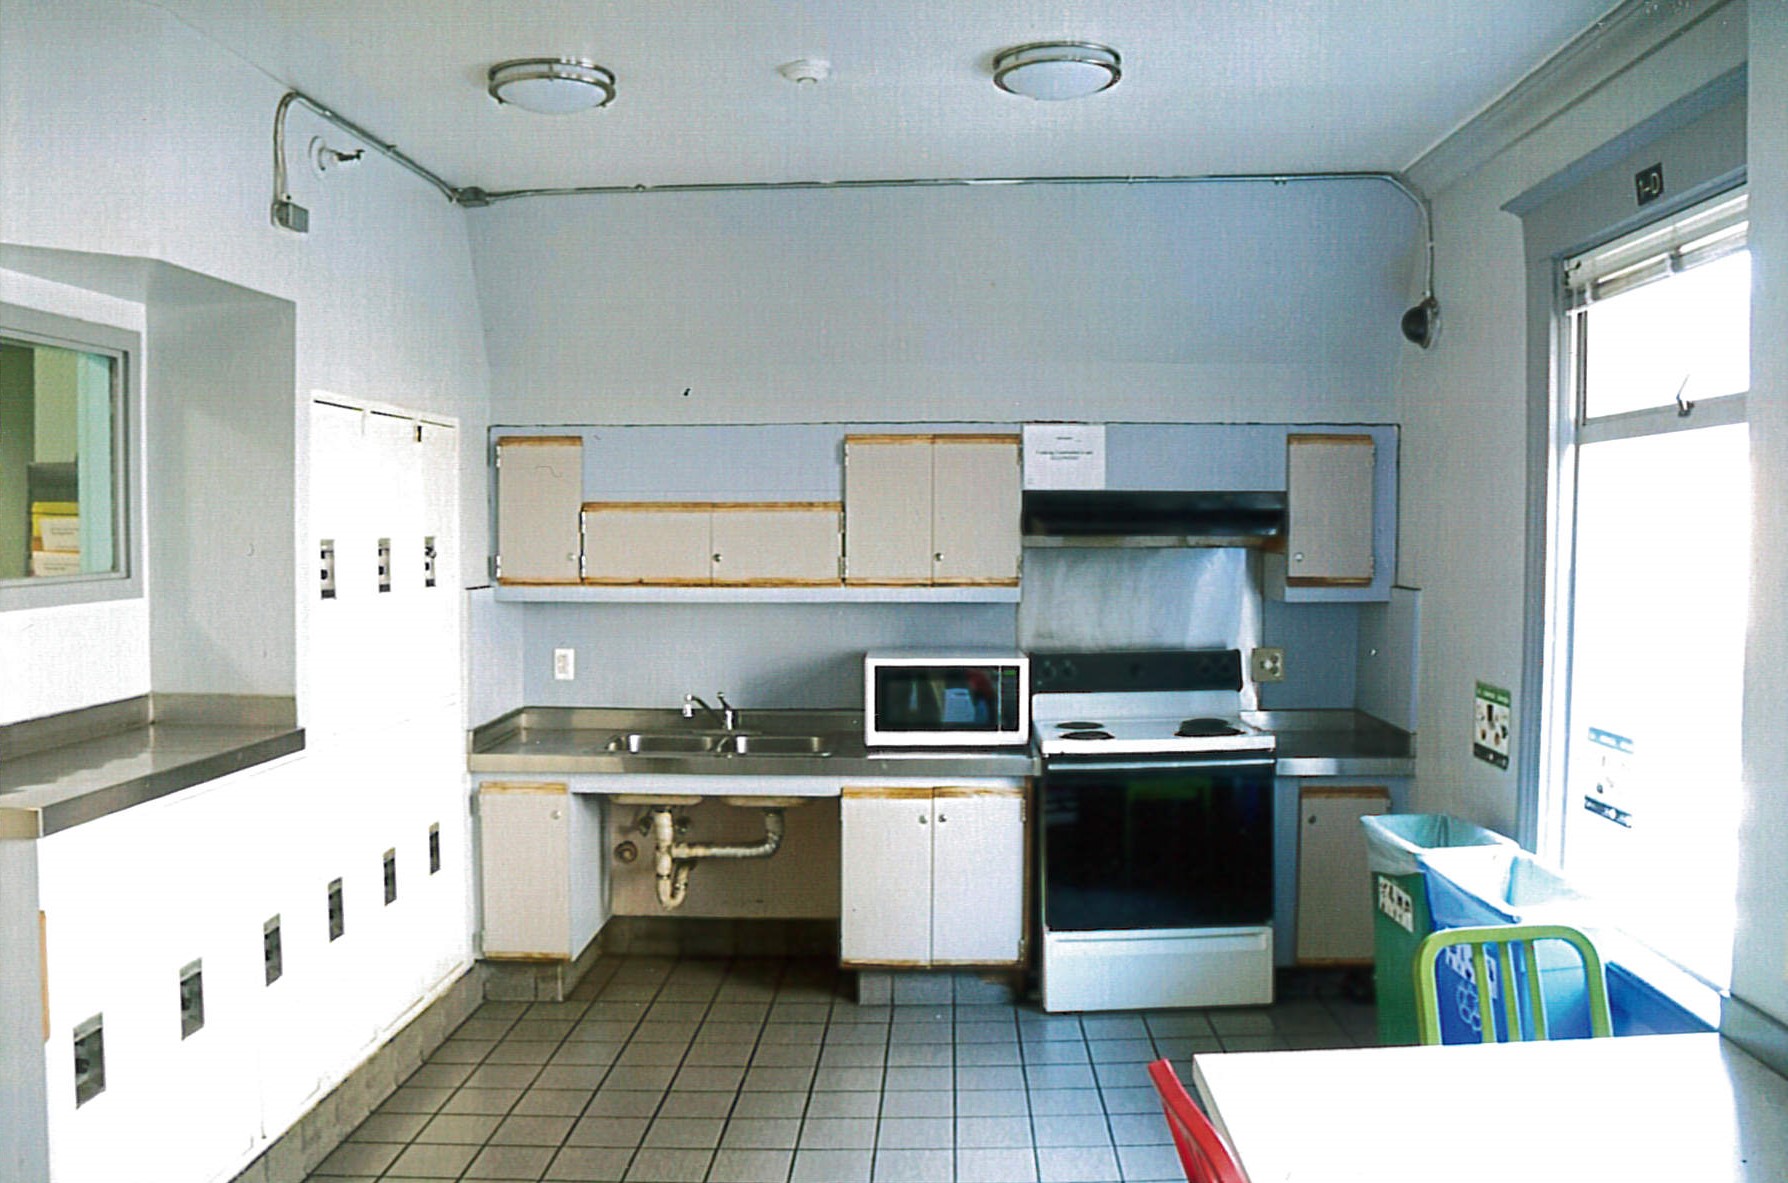 First floor community kitchen 